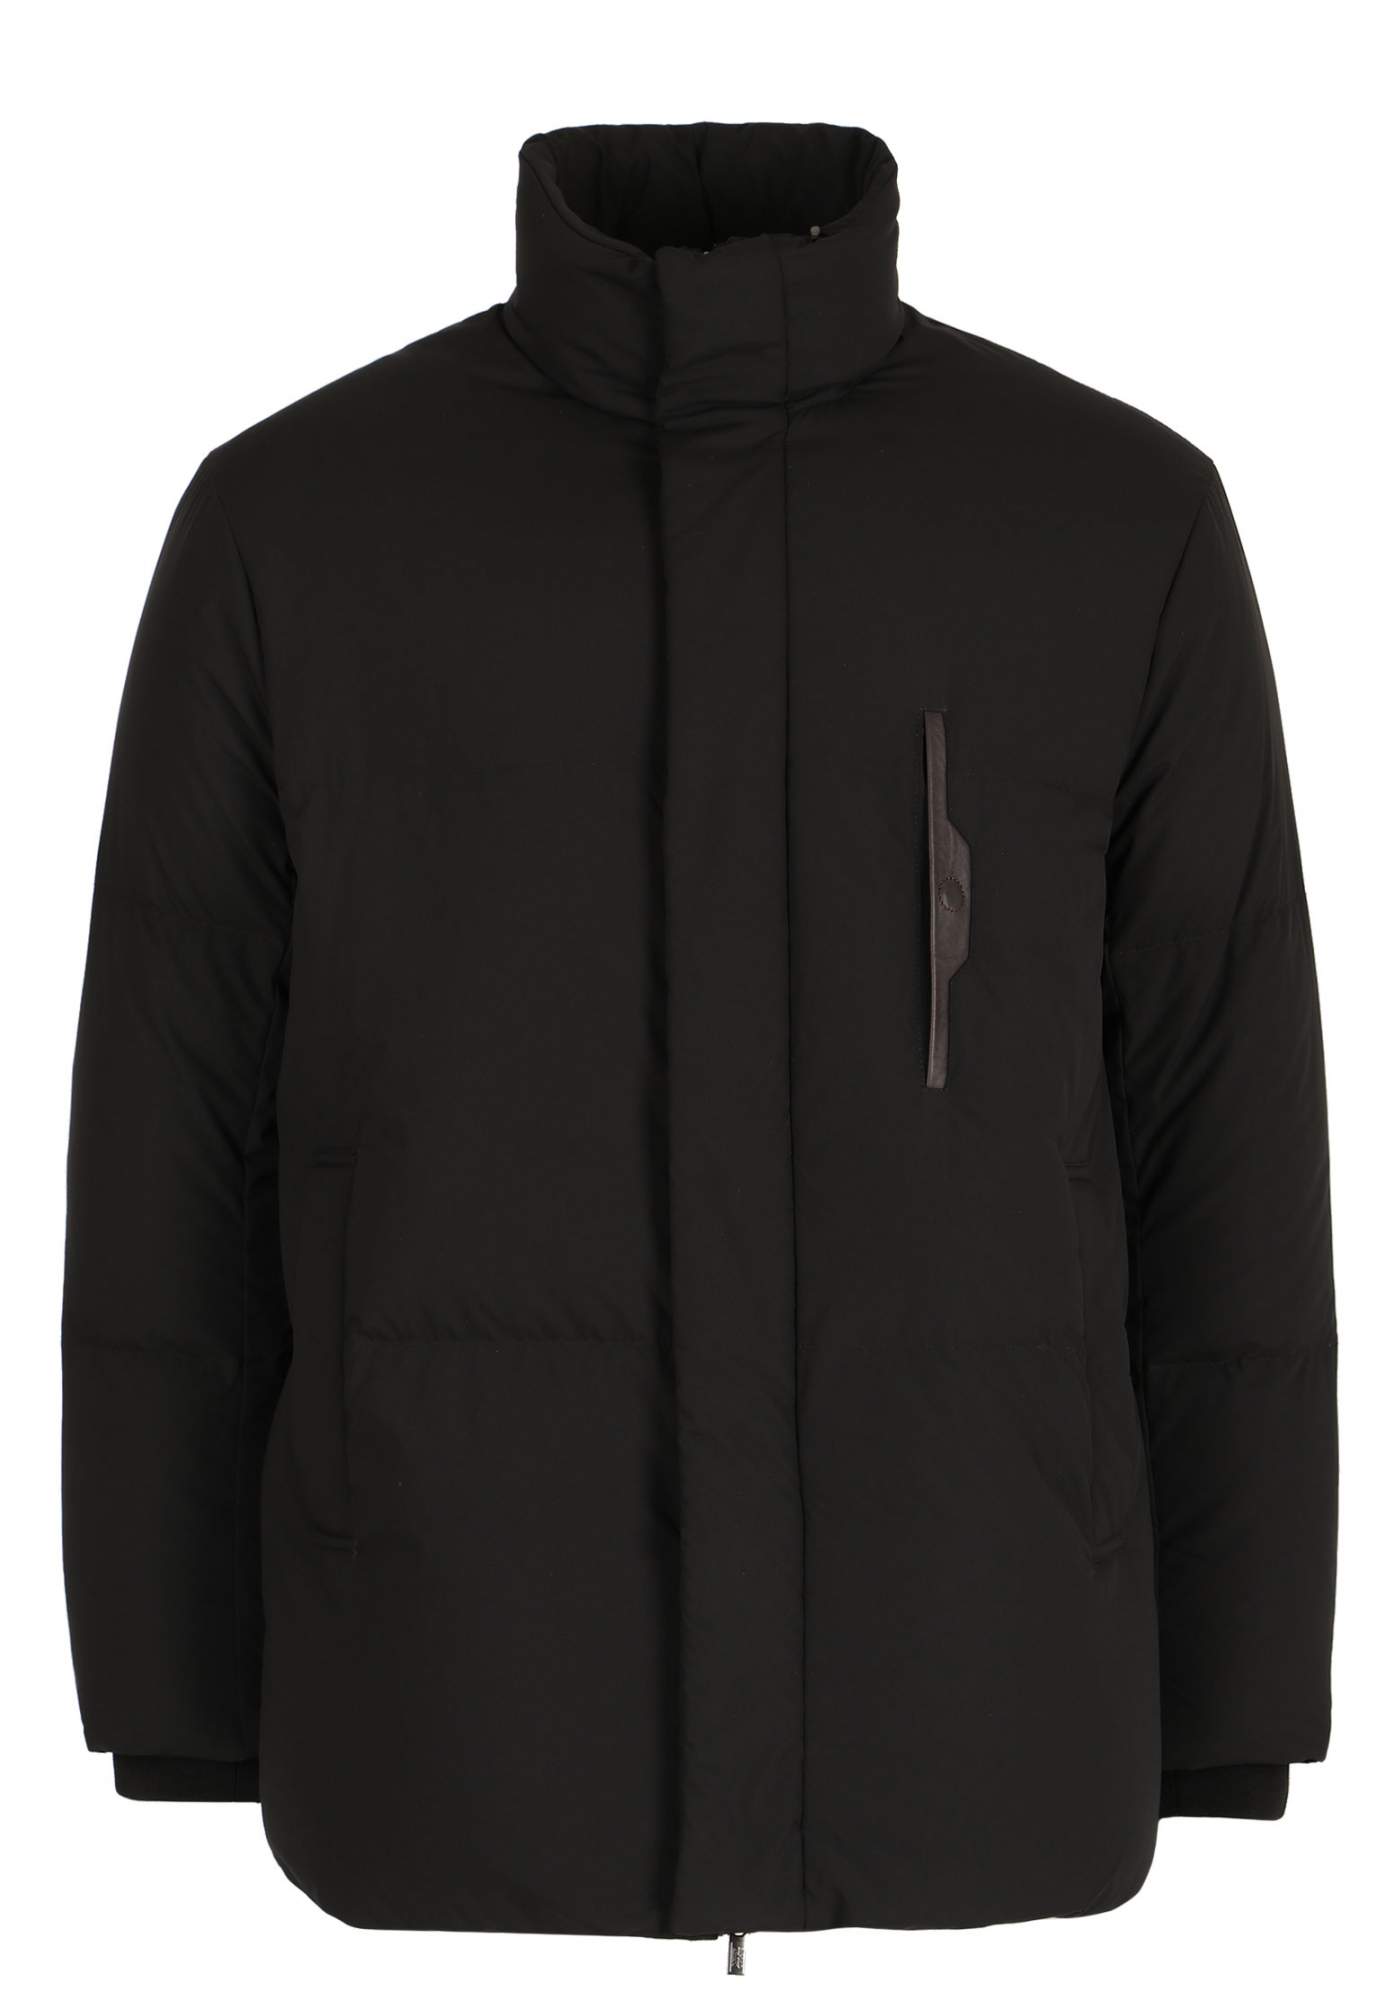 Куртка мужская Emporio Armani 123161 черная 58 RU